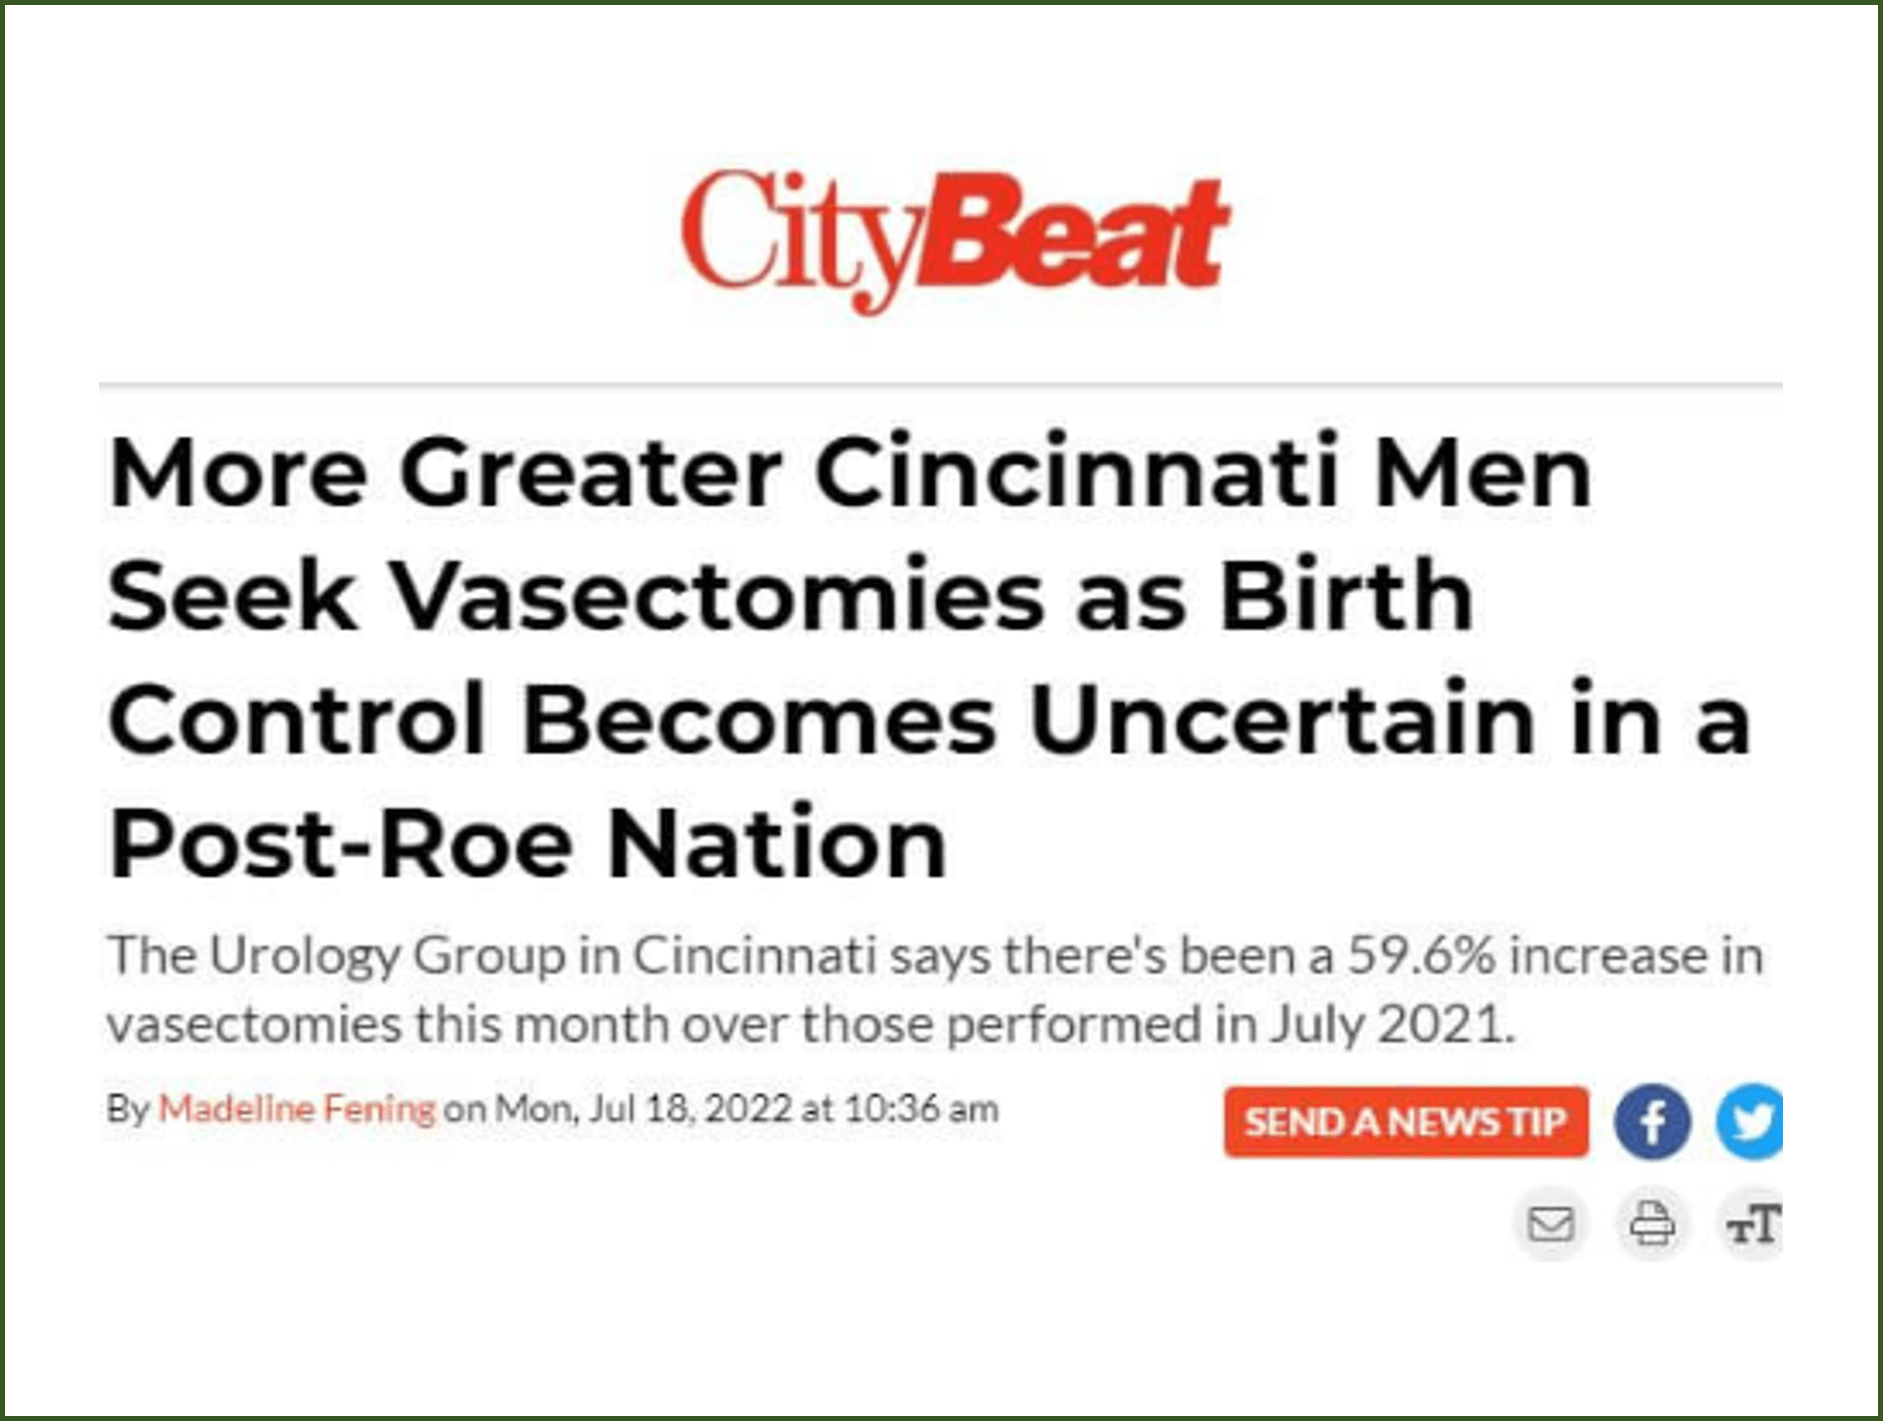 City Beat vasectomy